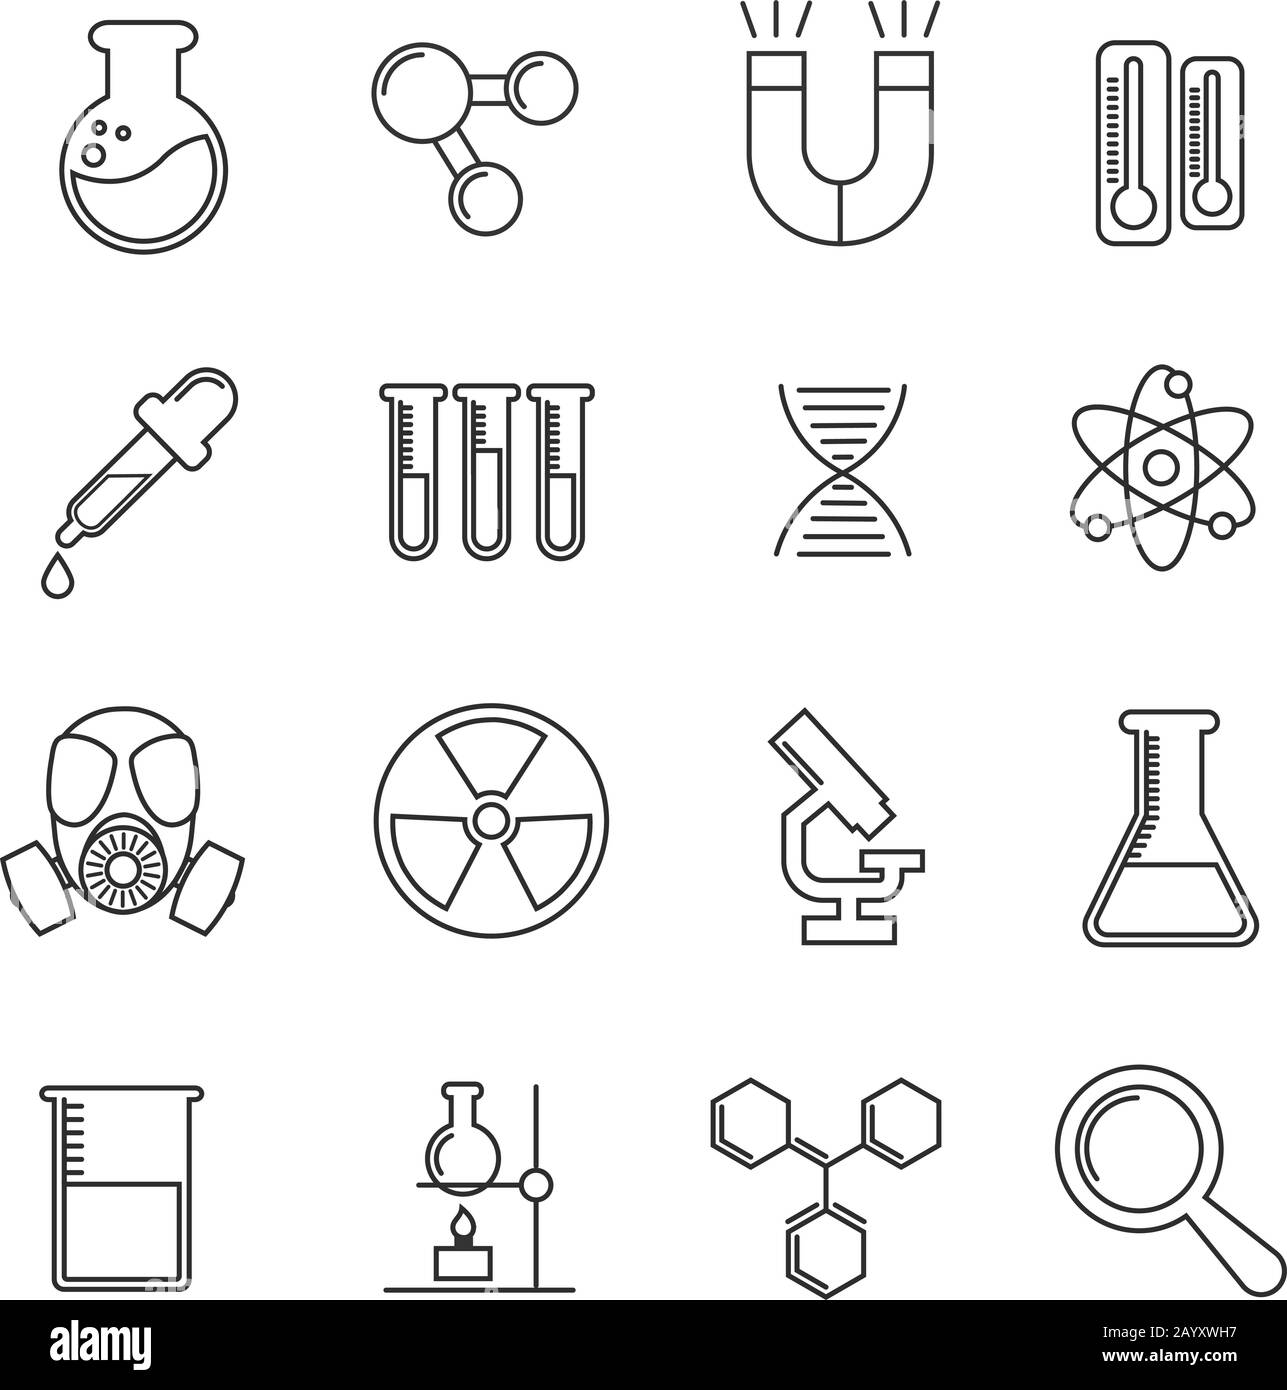 Chemie-Vektor-Thin Line-Symbole festgelegt. Wissenschaftliche Chemie Illustration und Mikroskop mit Kolben für Chemie Stock Vektor